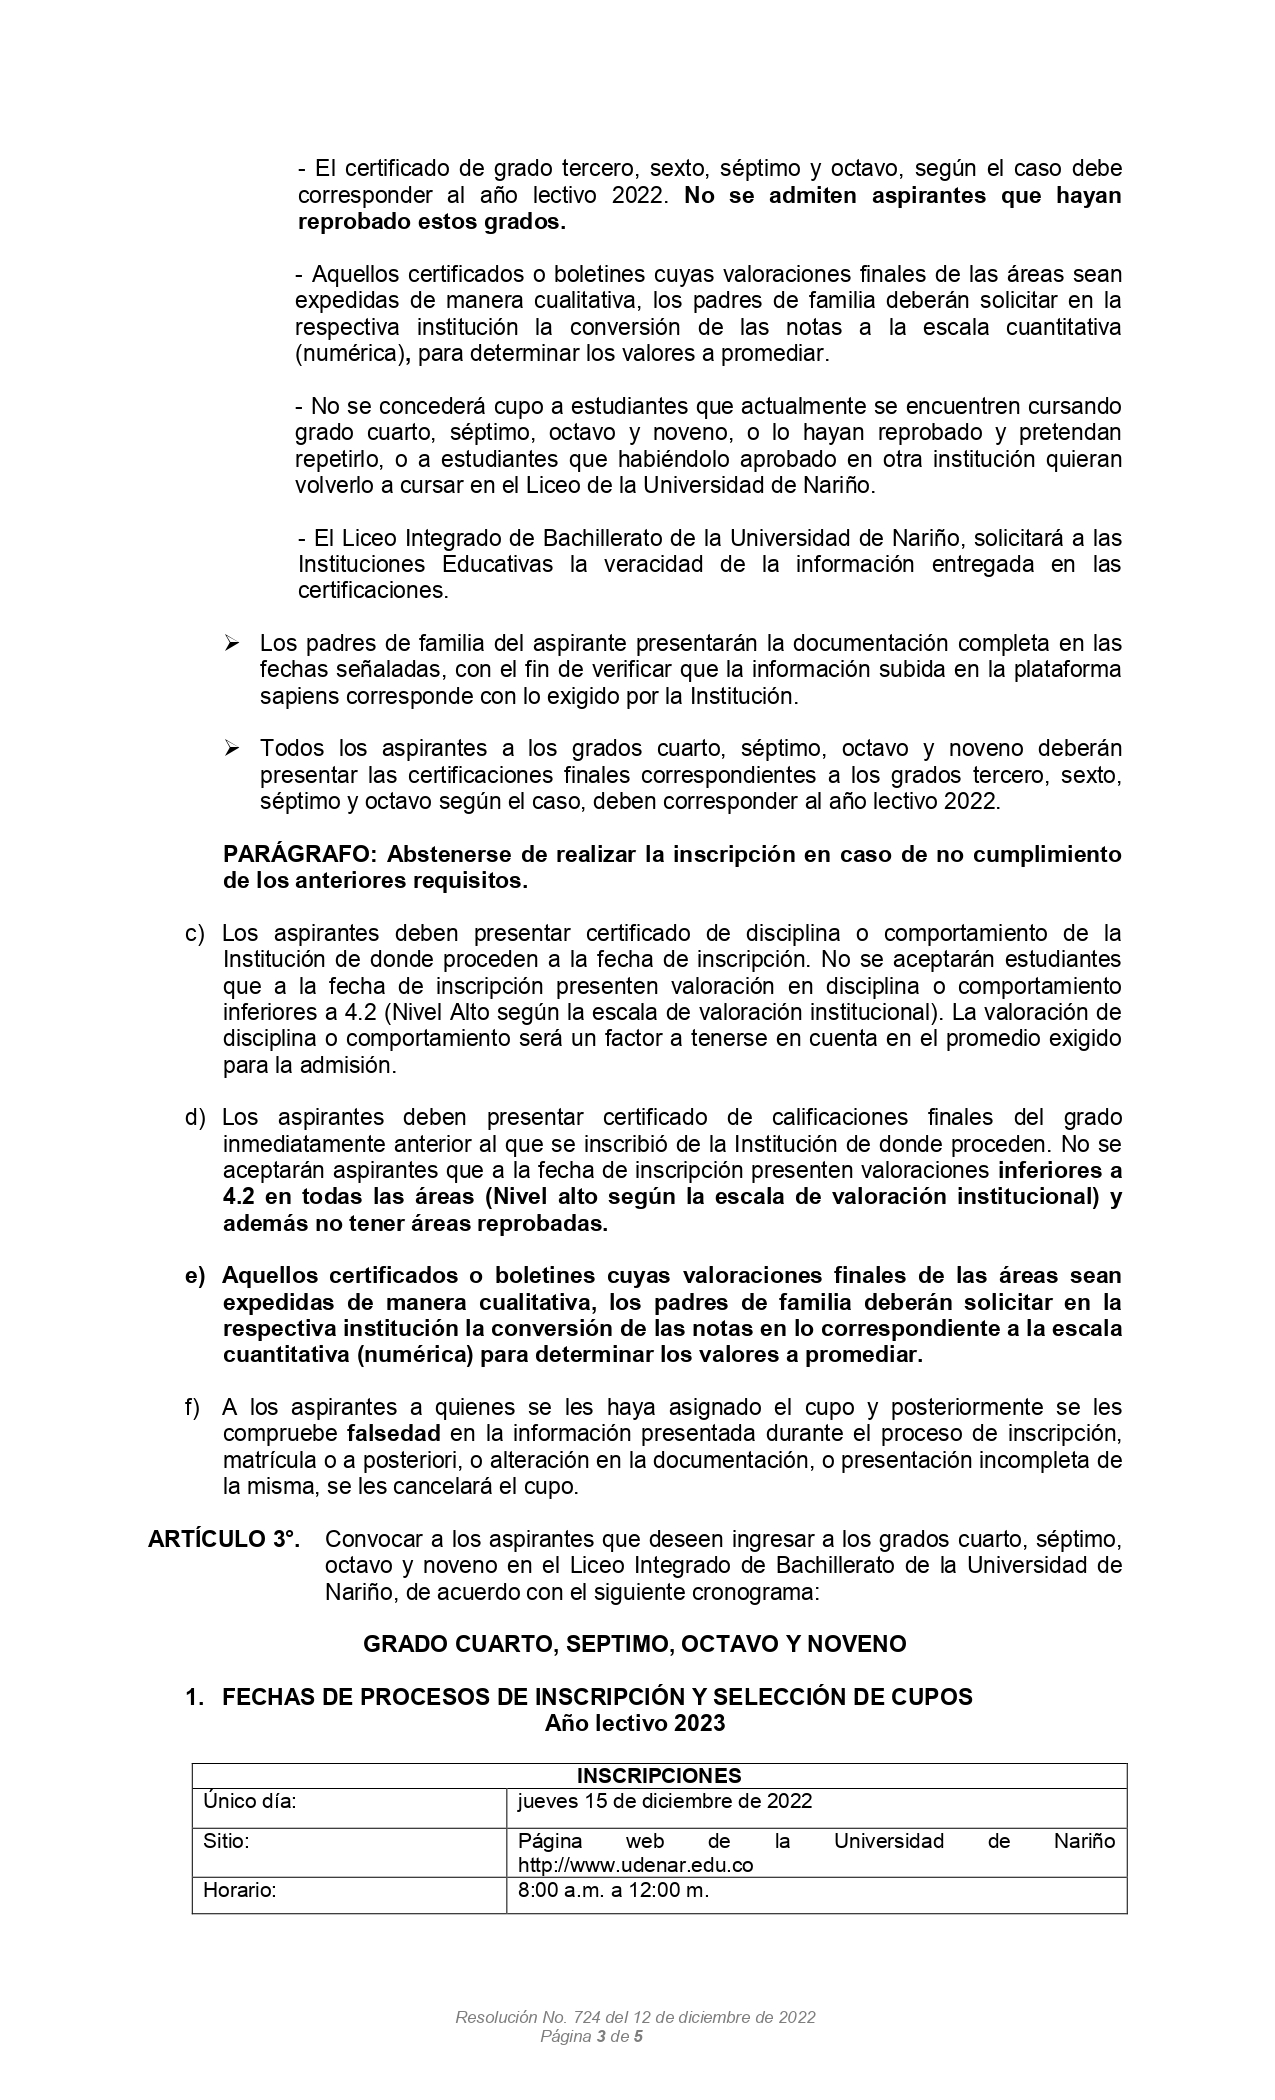 GRADOS-DIFERENTES-A-TRANSICIoN-Y-SEXTO-LICEO-2023_page-0003